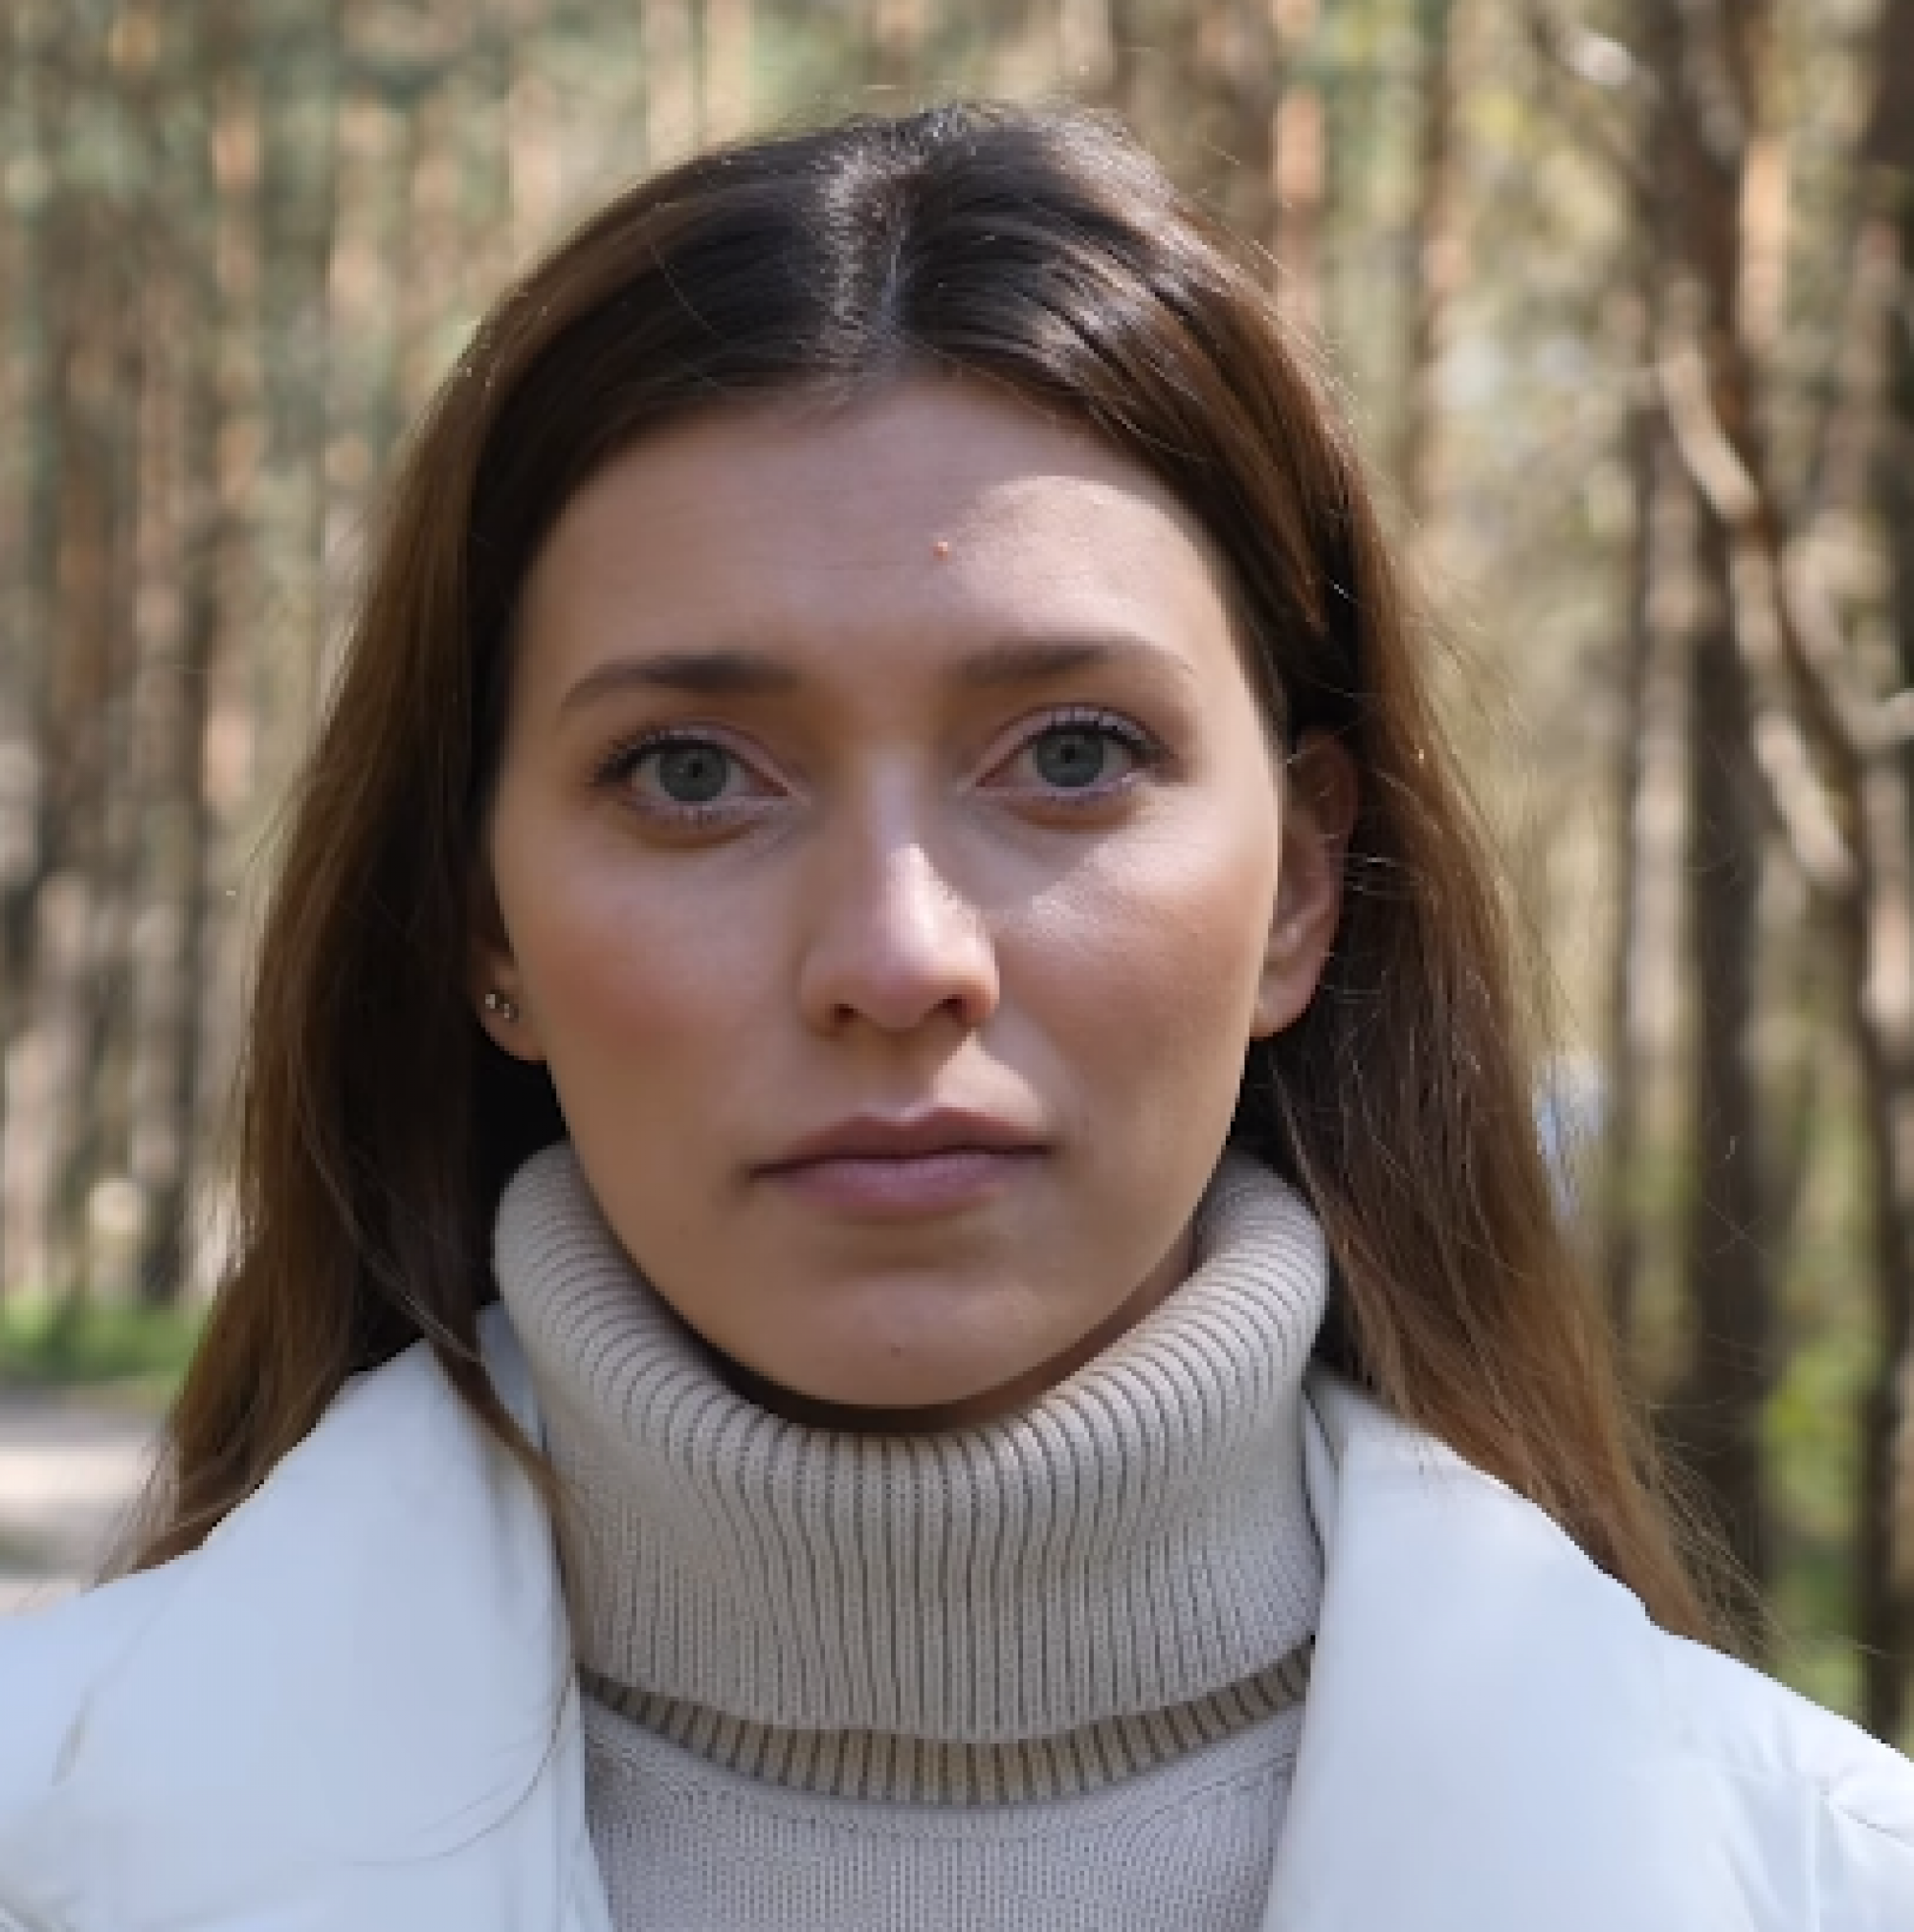 Регина Тодоренко сняла фильм о проблеме домашнего насилия и поделилась ссылкой на него